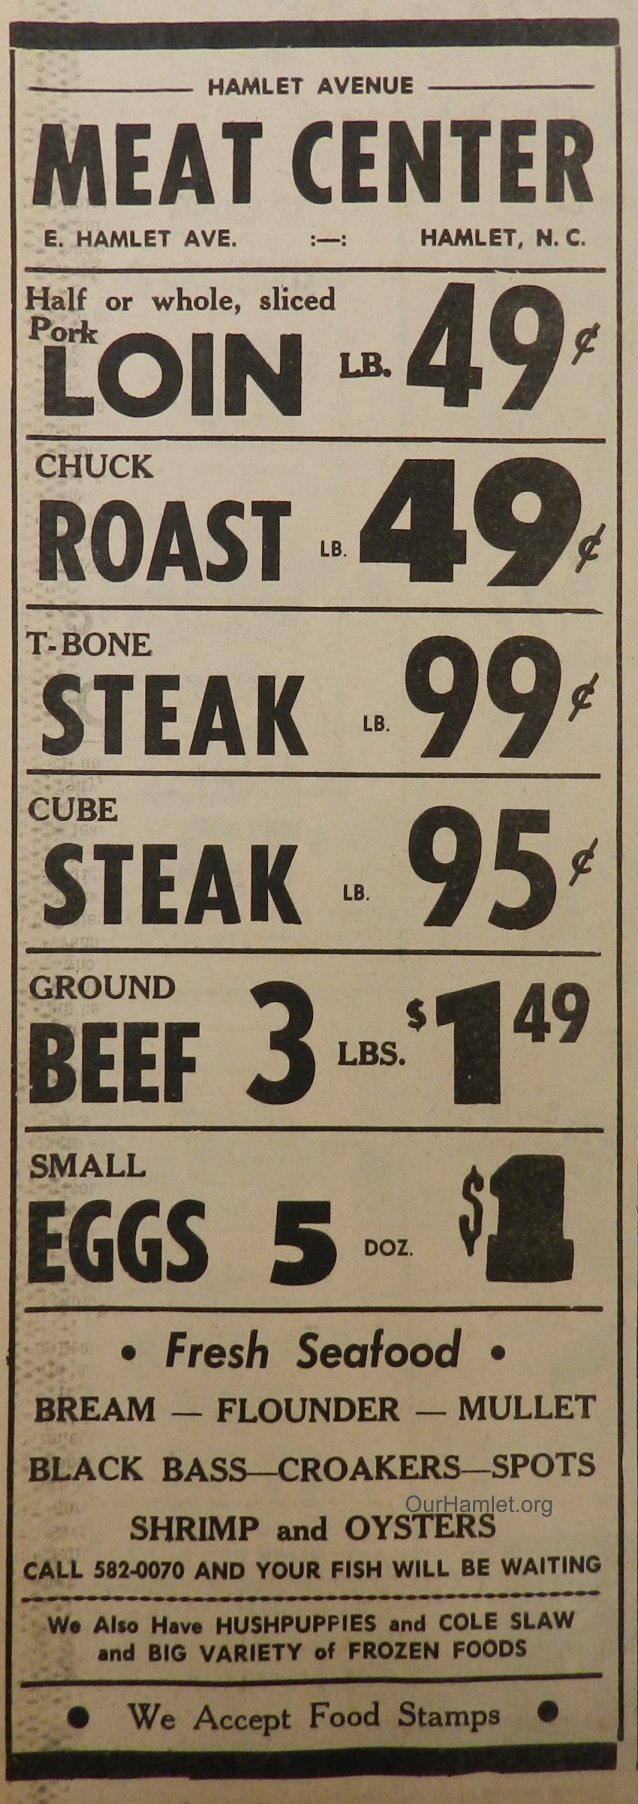 1970 Hamlet Meat Center OH.jpg